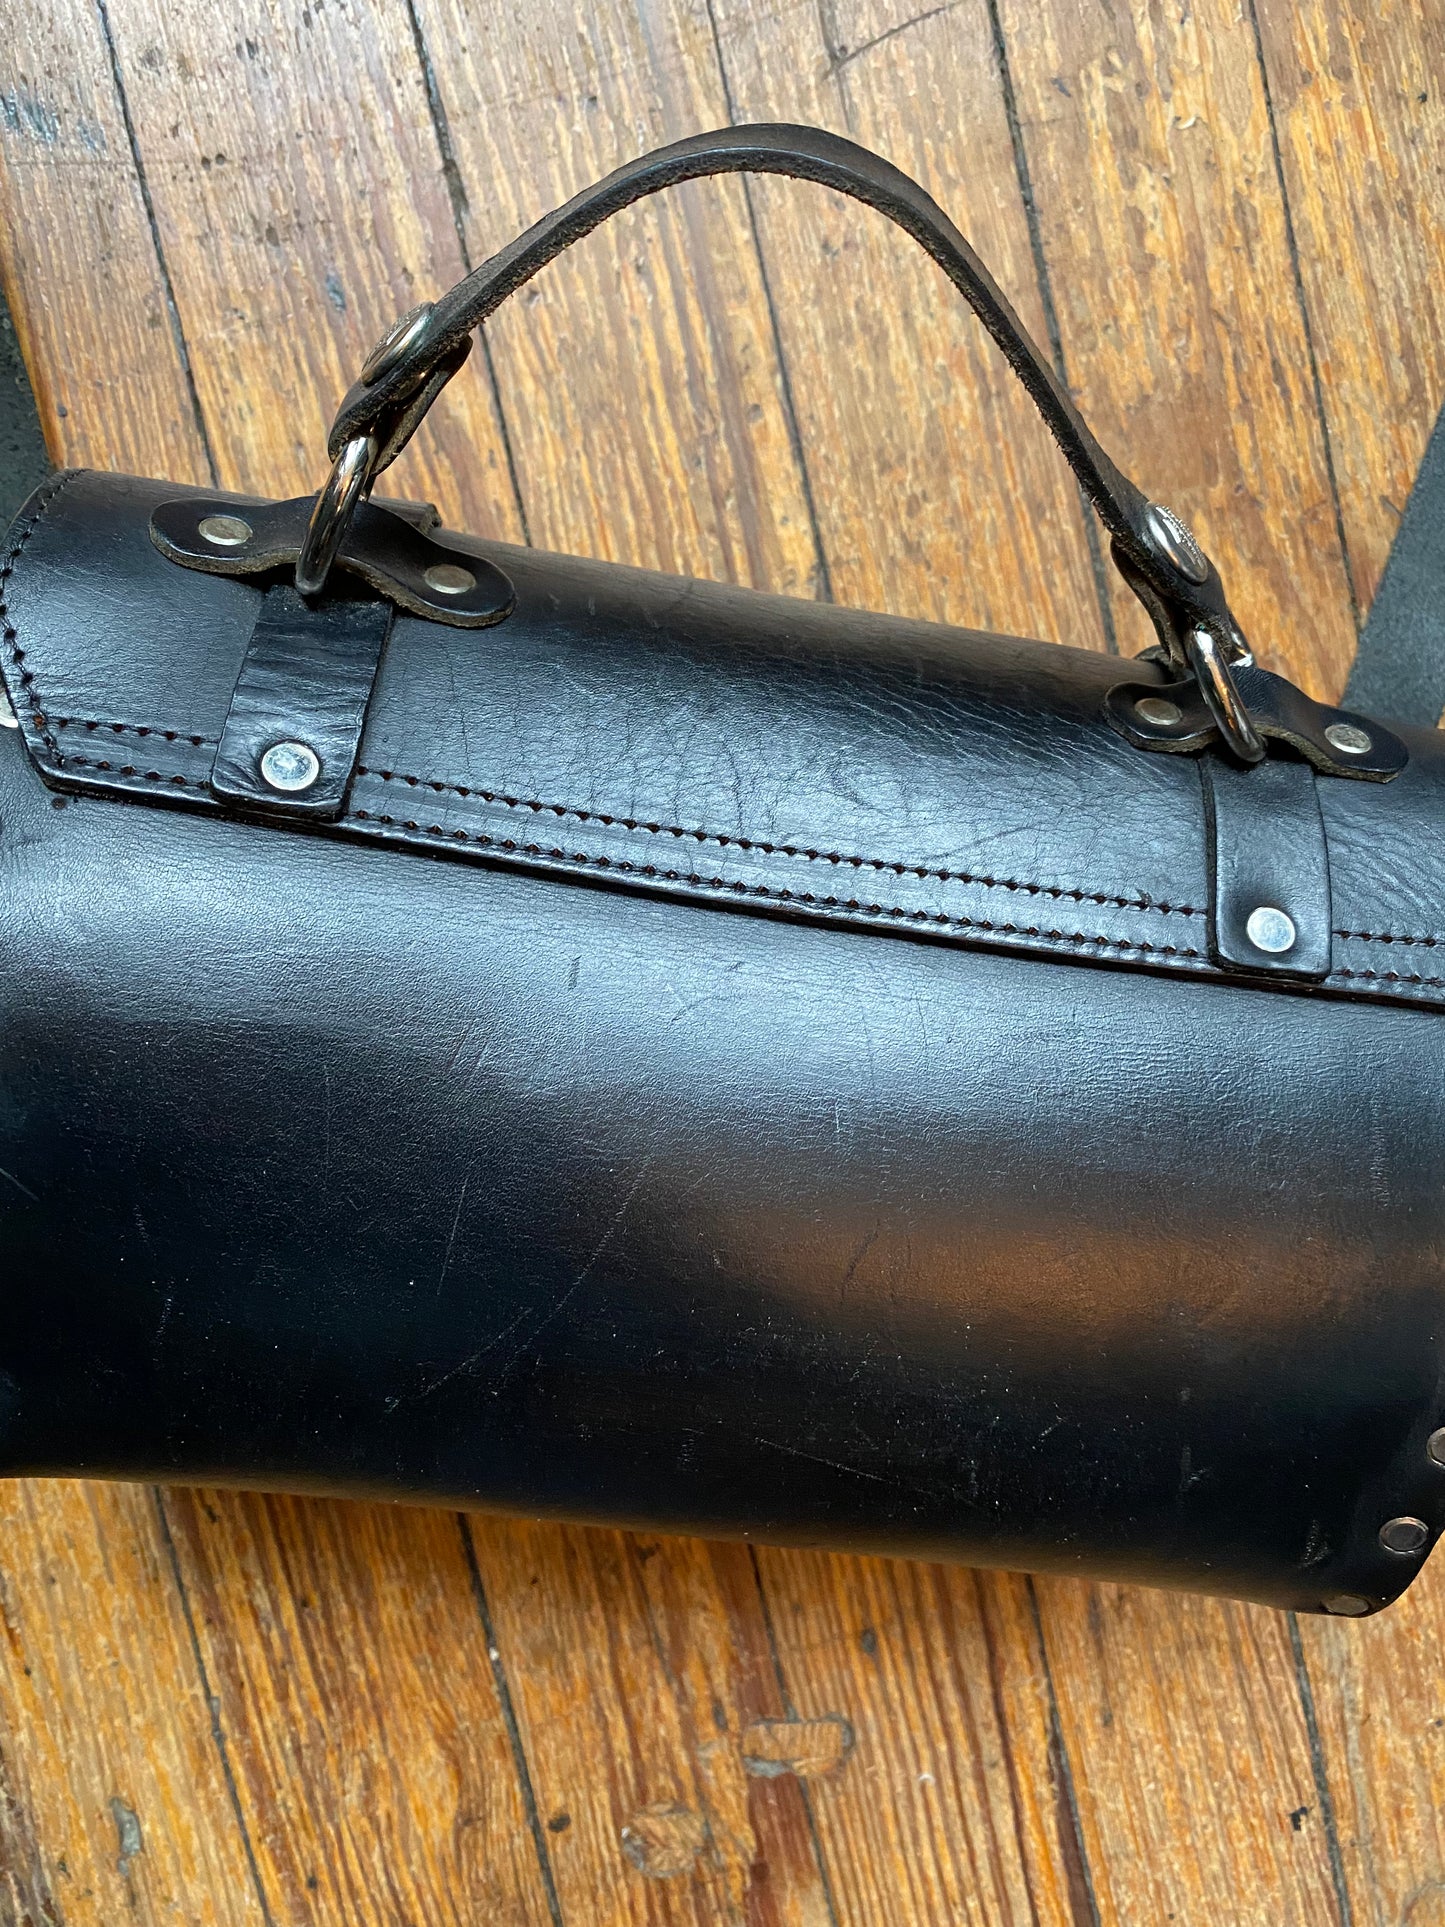 Vintage Harley Davidson Leather Barrel Bag